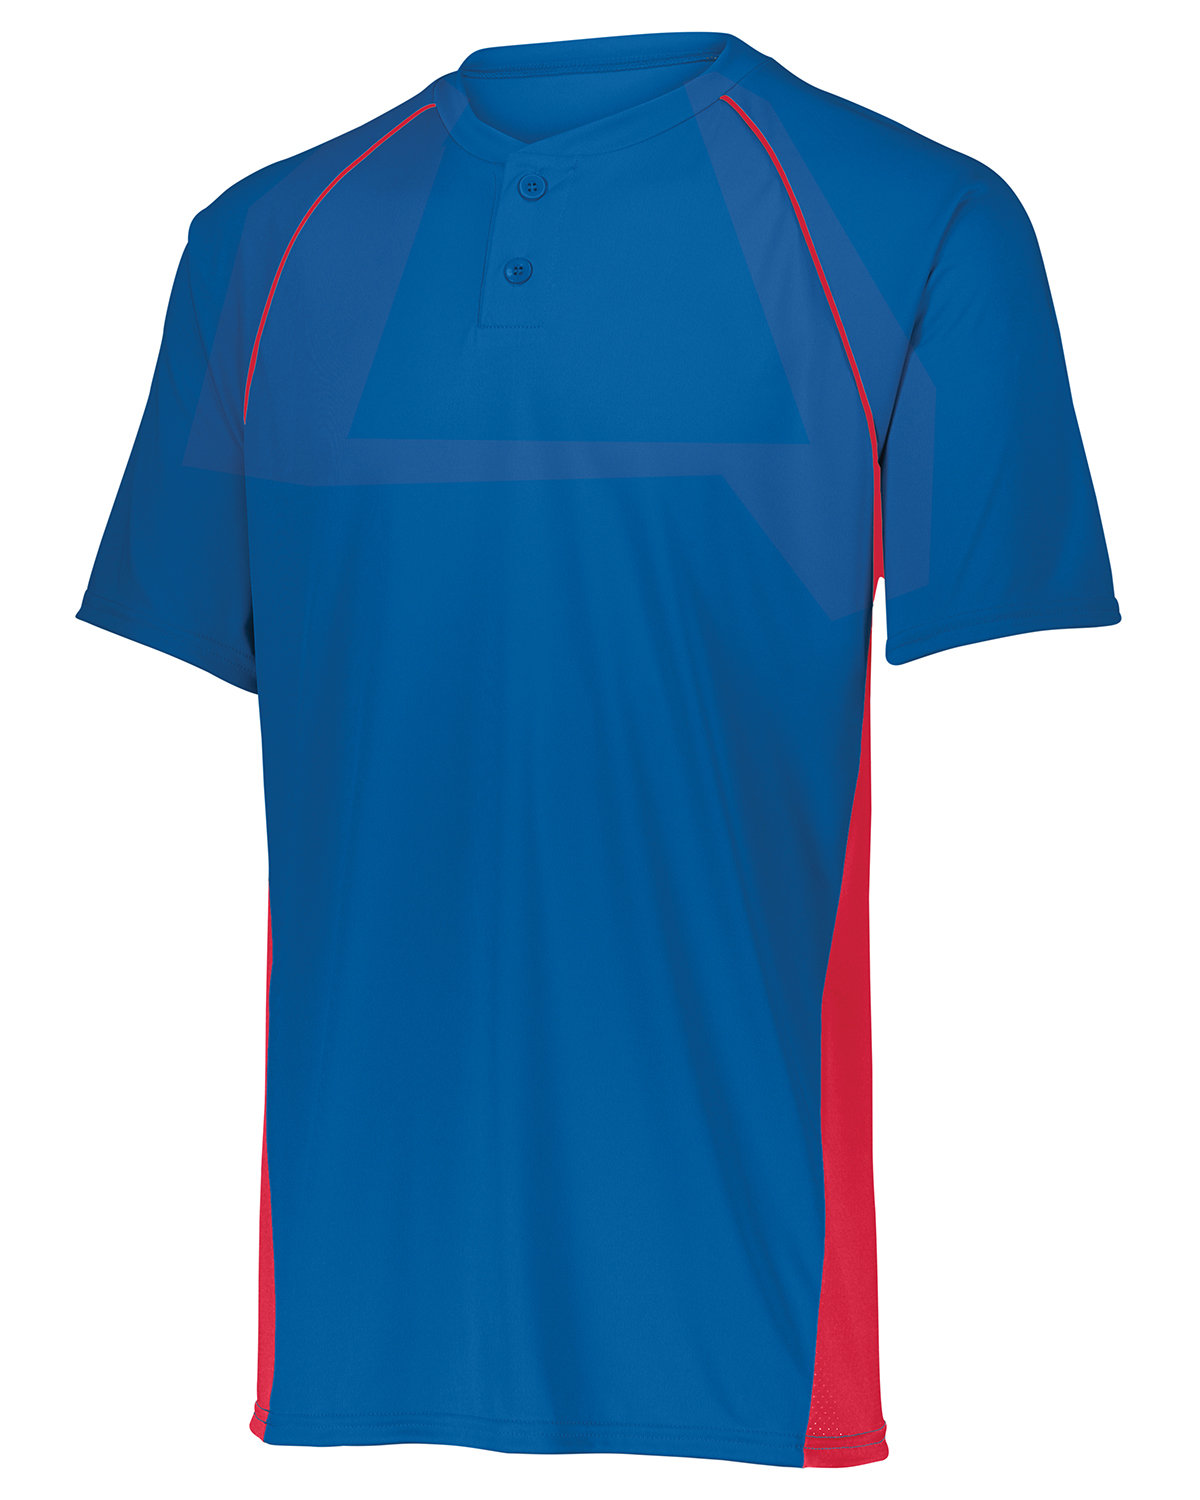 Augusta Sportswear® 4420 Baseball Jersey 2.0 - One Stop